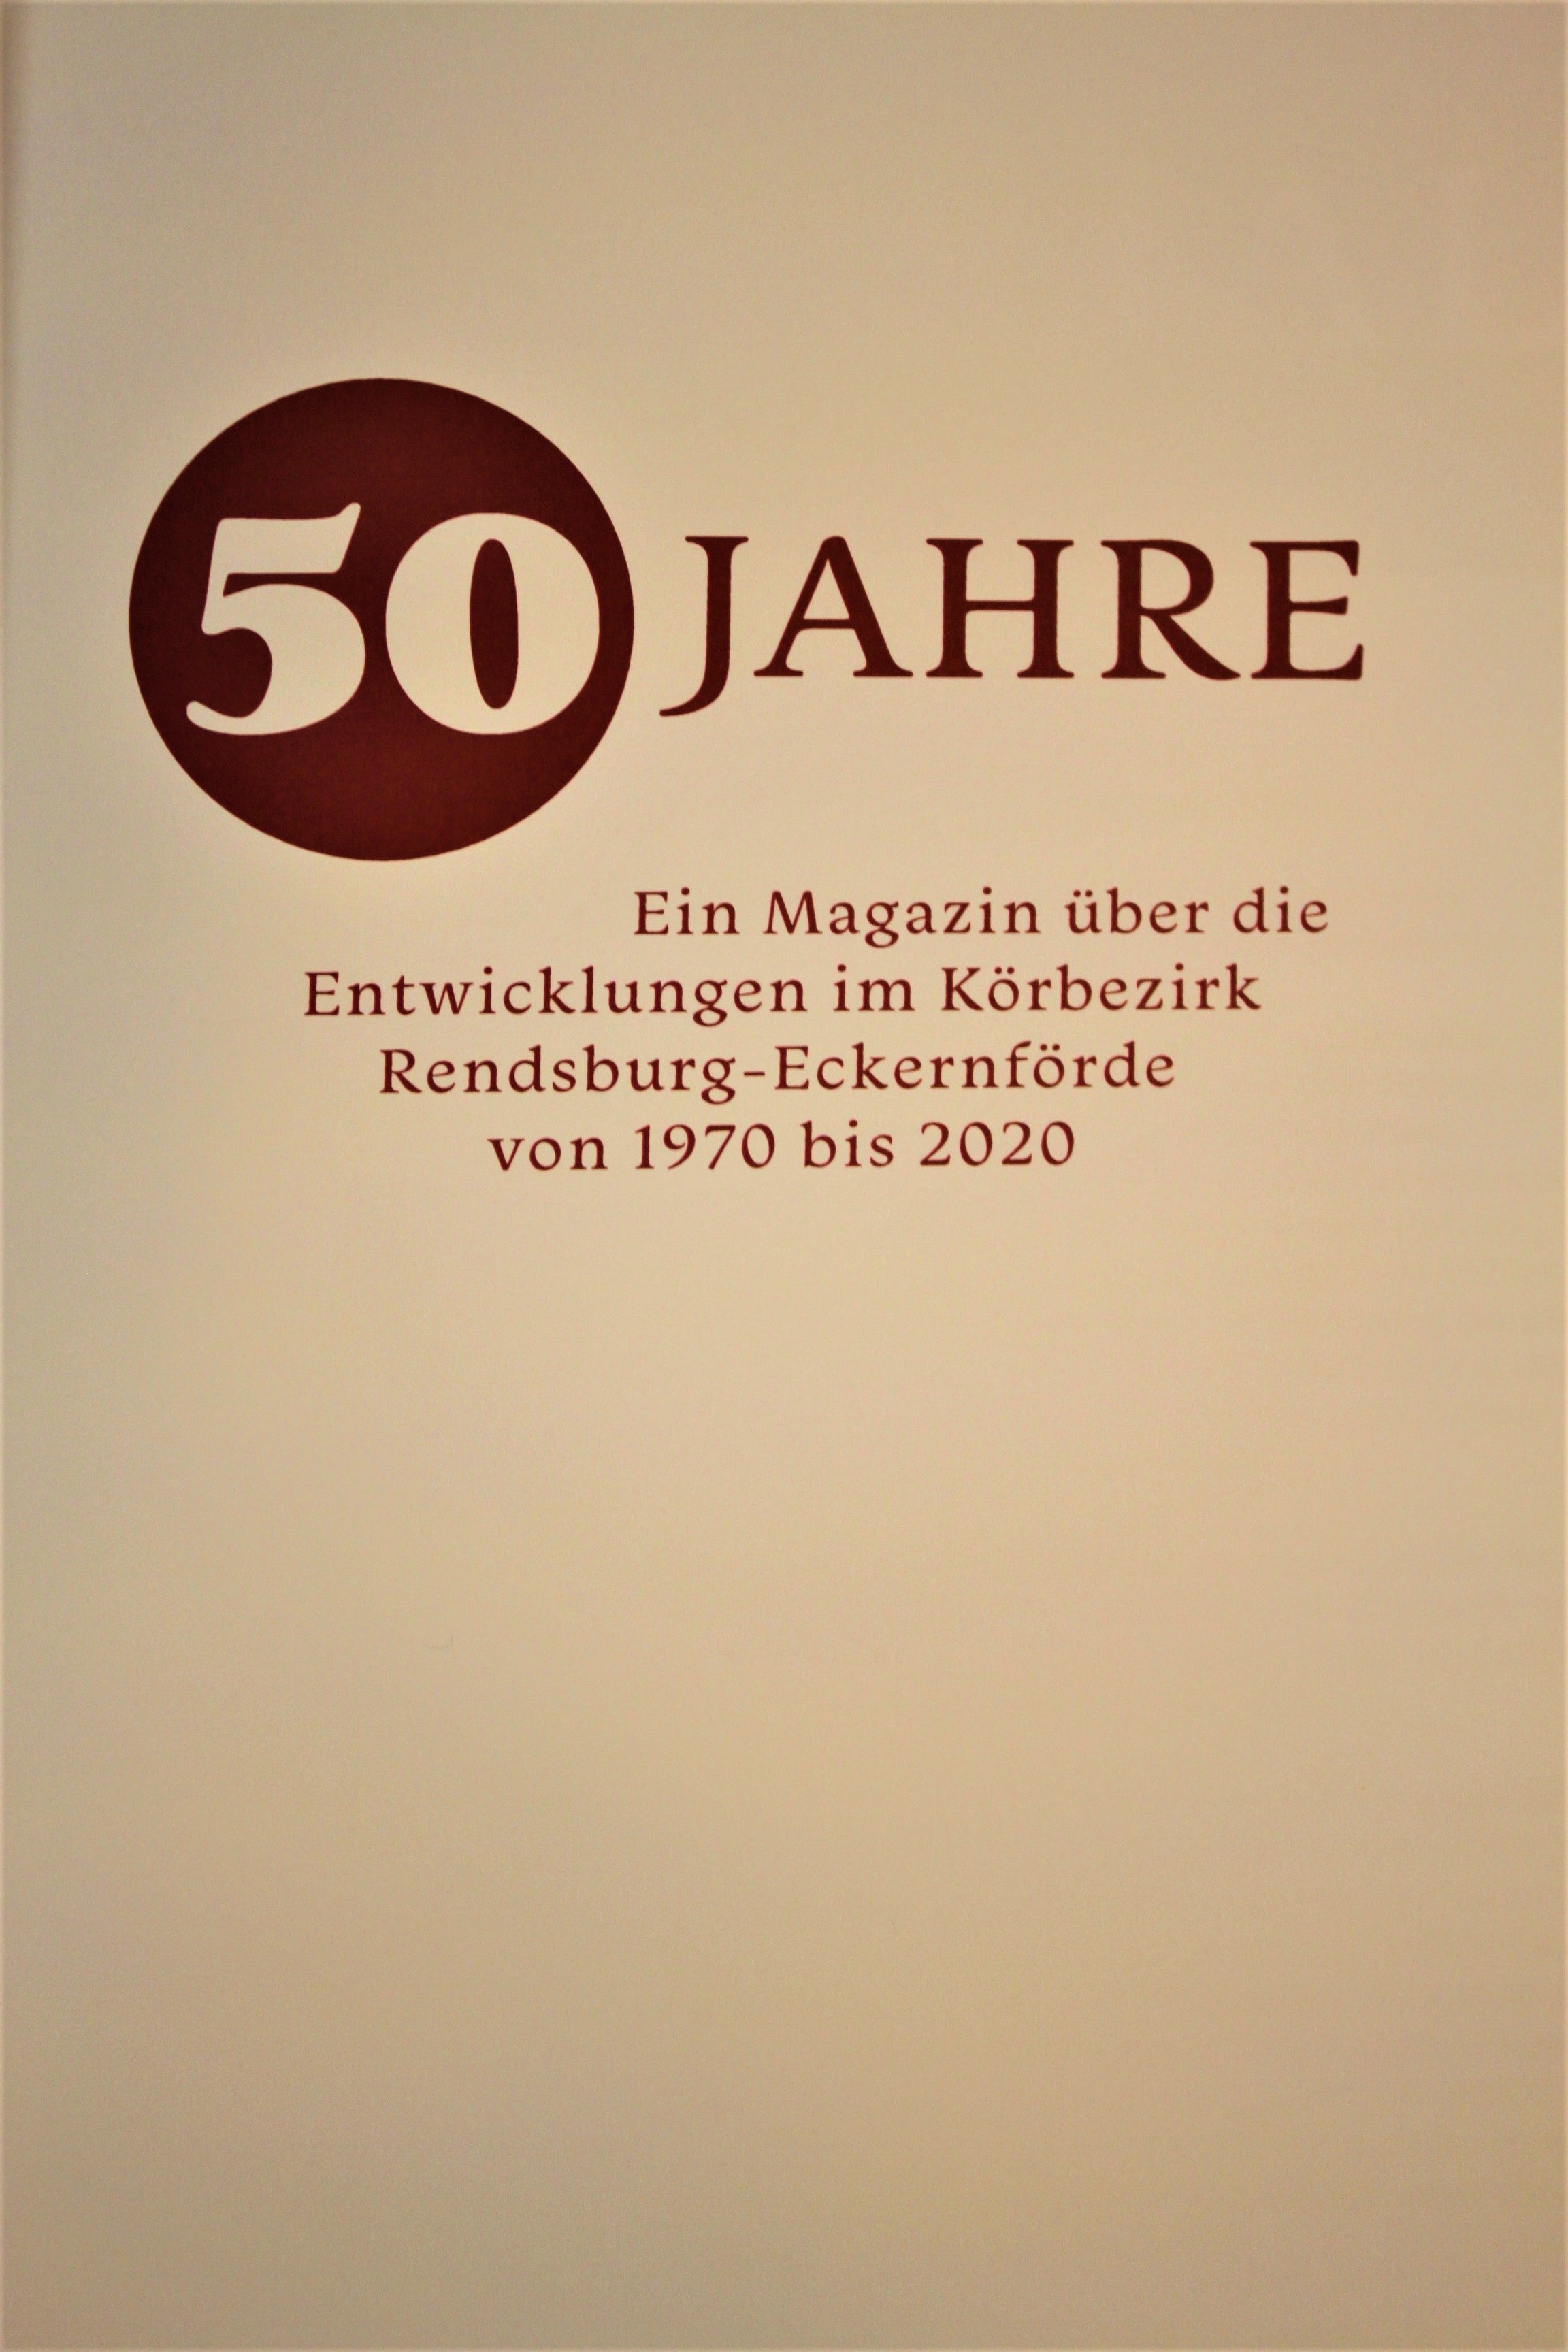 50 Jahre Körbezirk Rendsburg-Eckernförde das Jubiläumsbuch von 1970-2020 (7040)